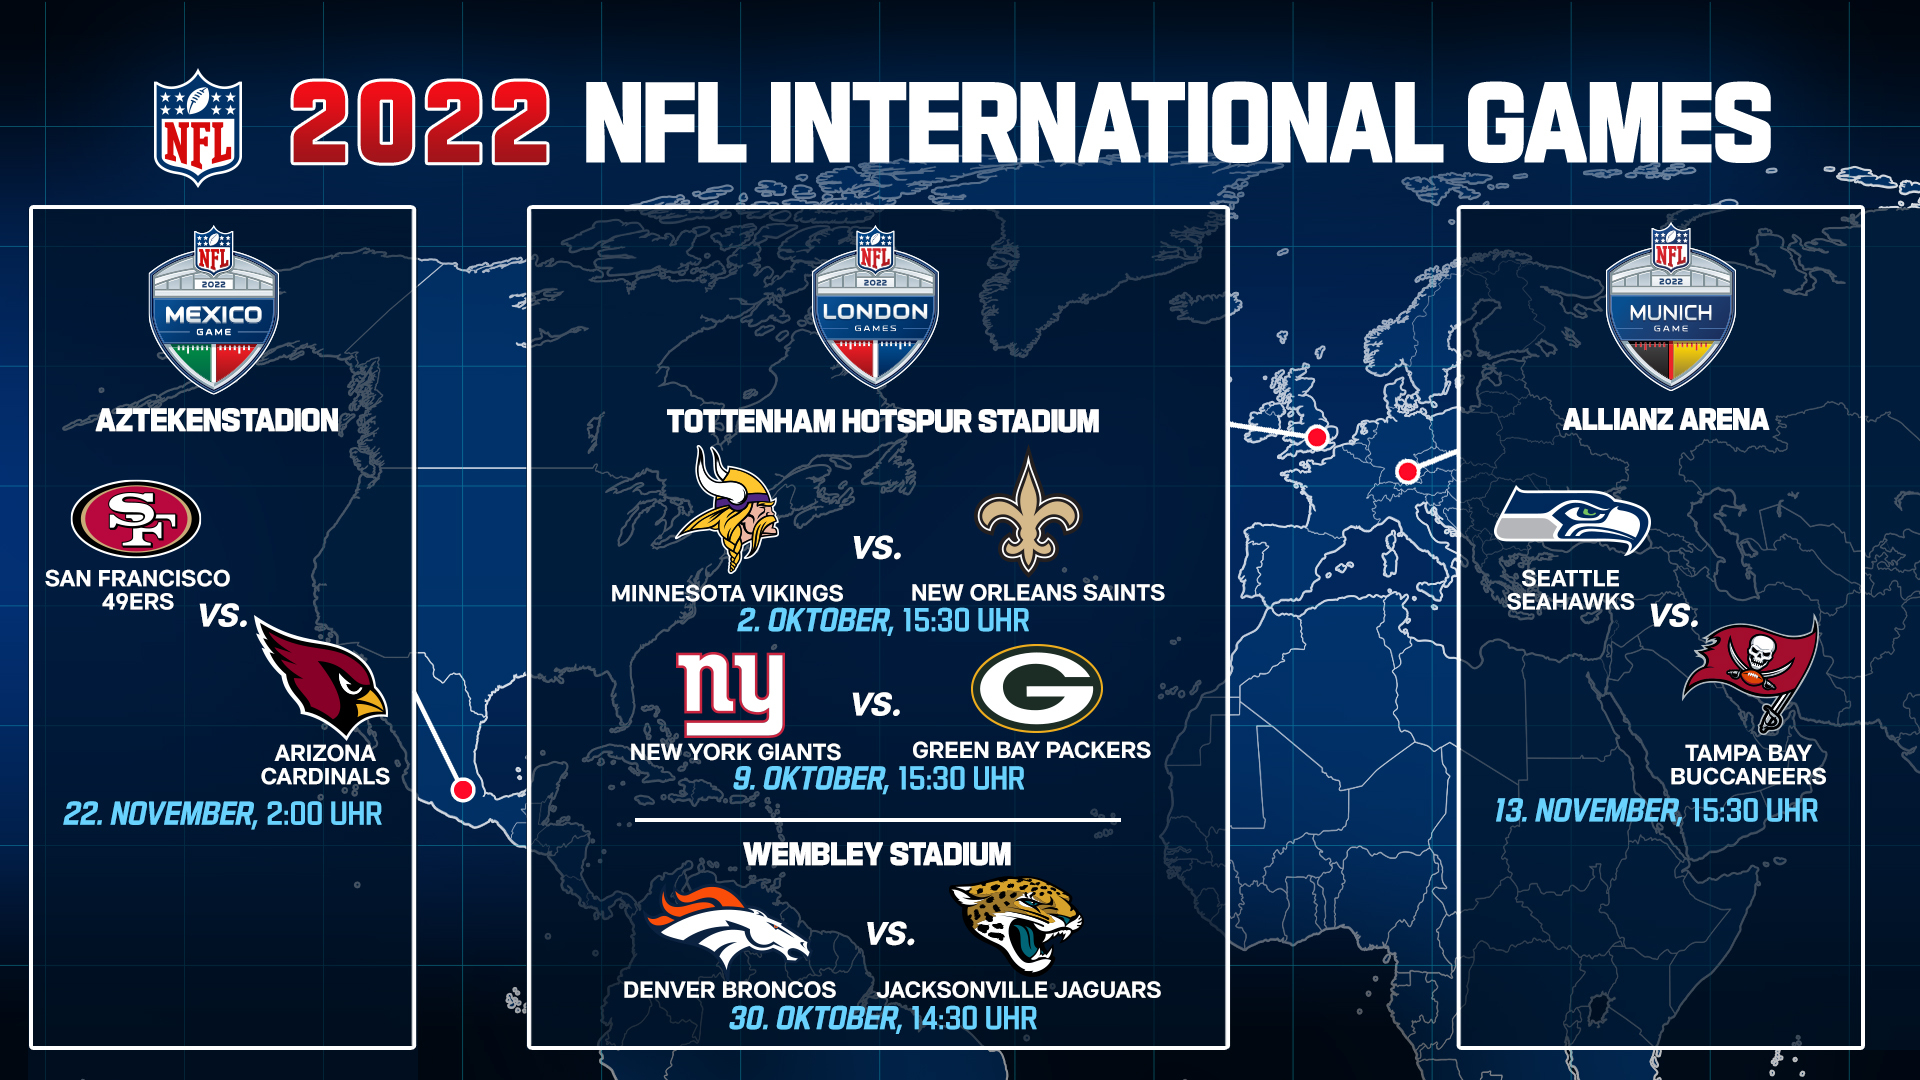 Die International Games der NFL im Jahr 2022.